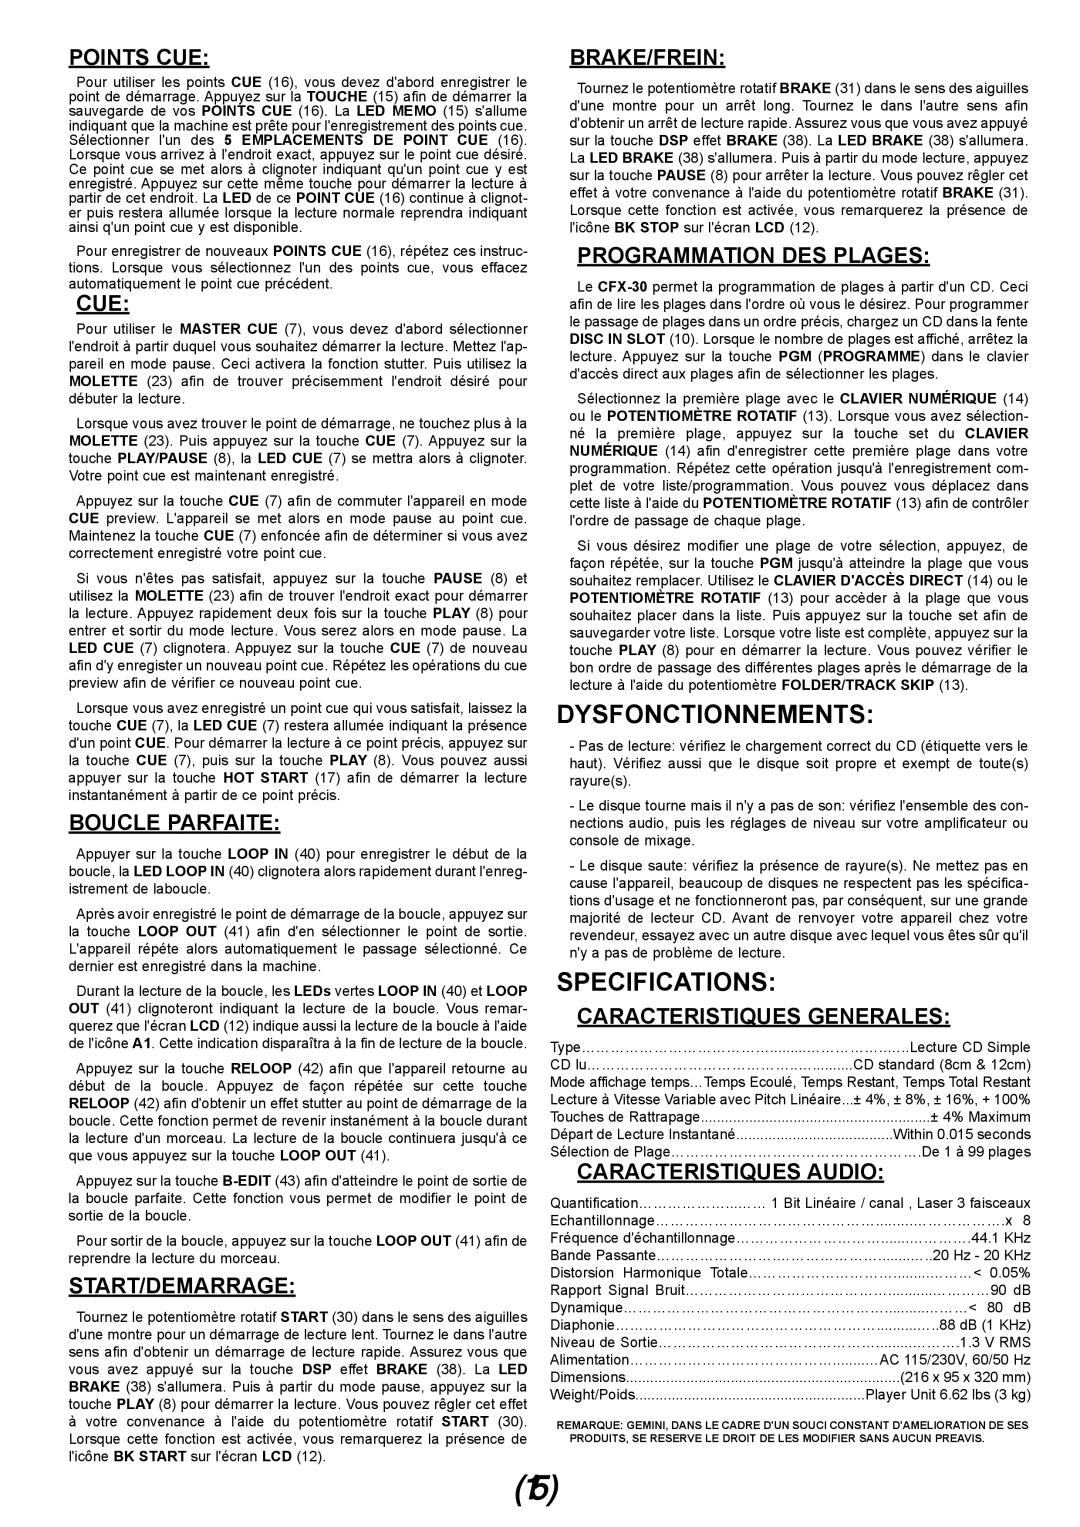 Gemini CFX-30 manual Dysfonctionnements, Specifications, Points Cue, Boucle Parfaite, Start/Demarrage, Brake/Frein 